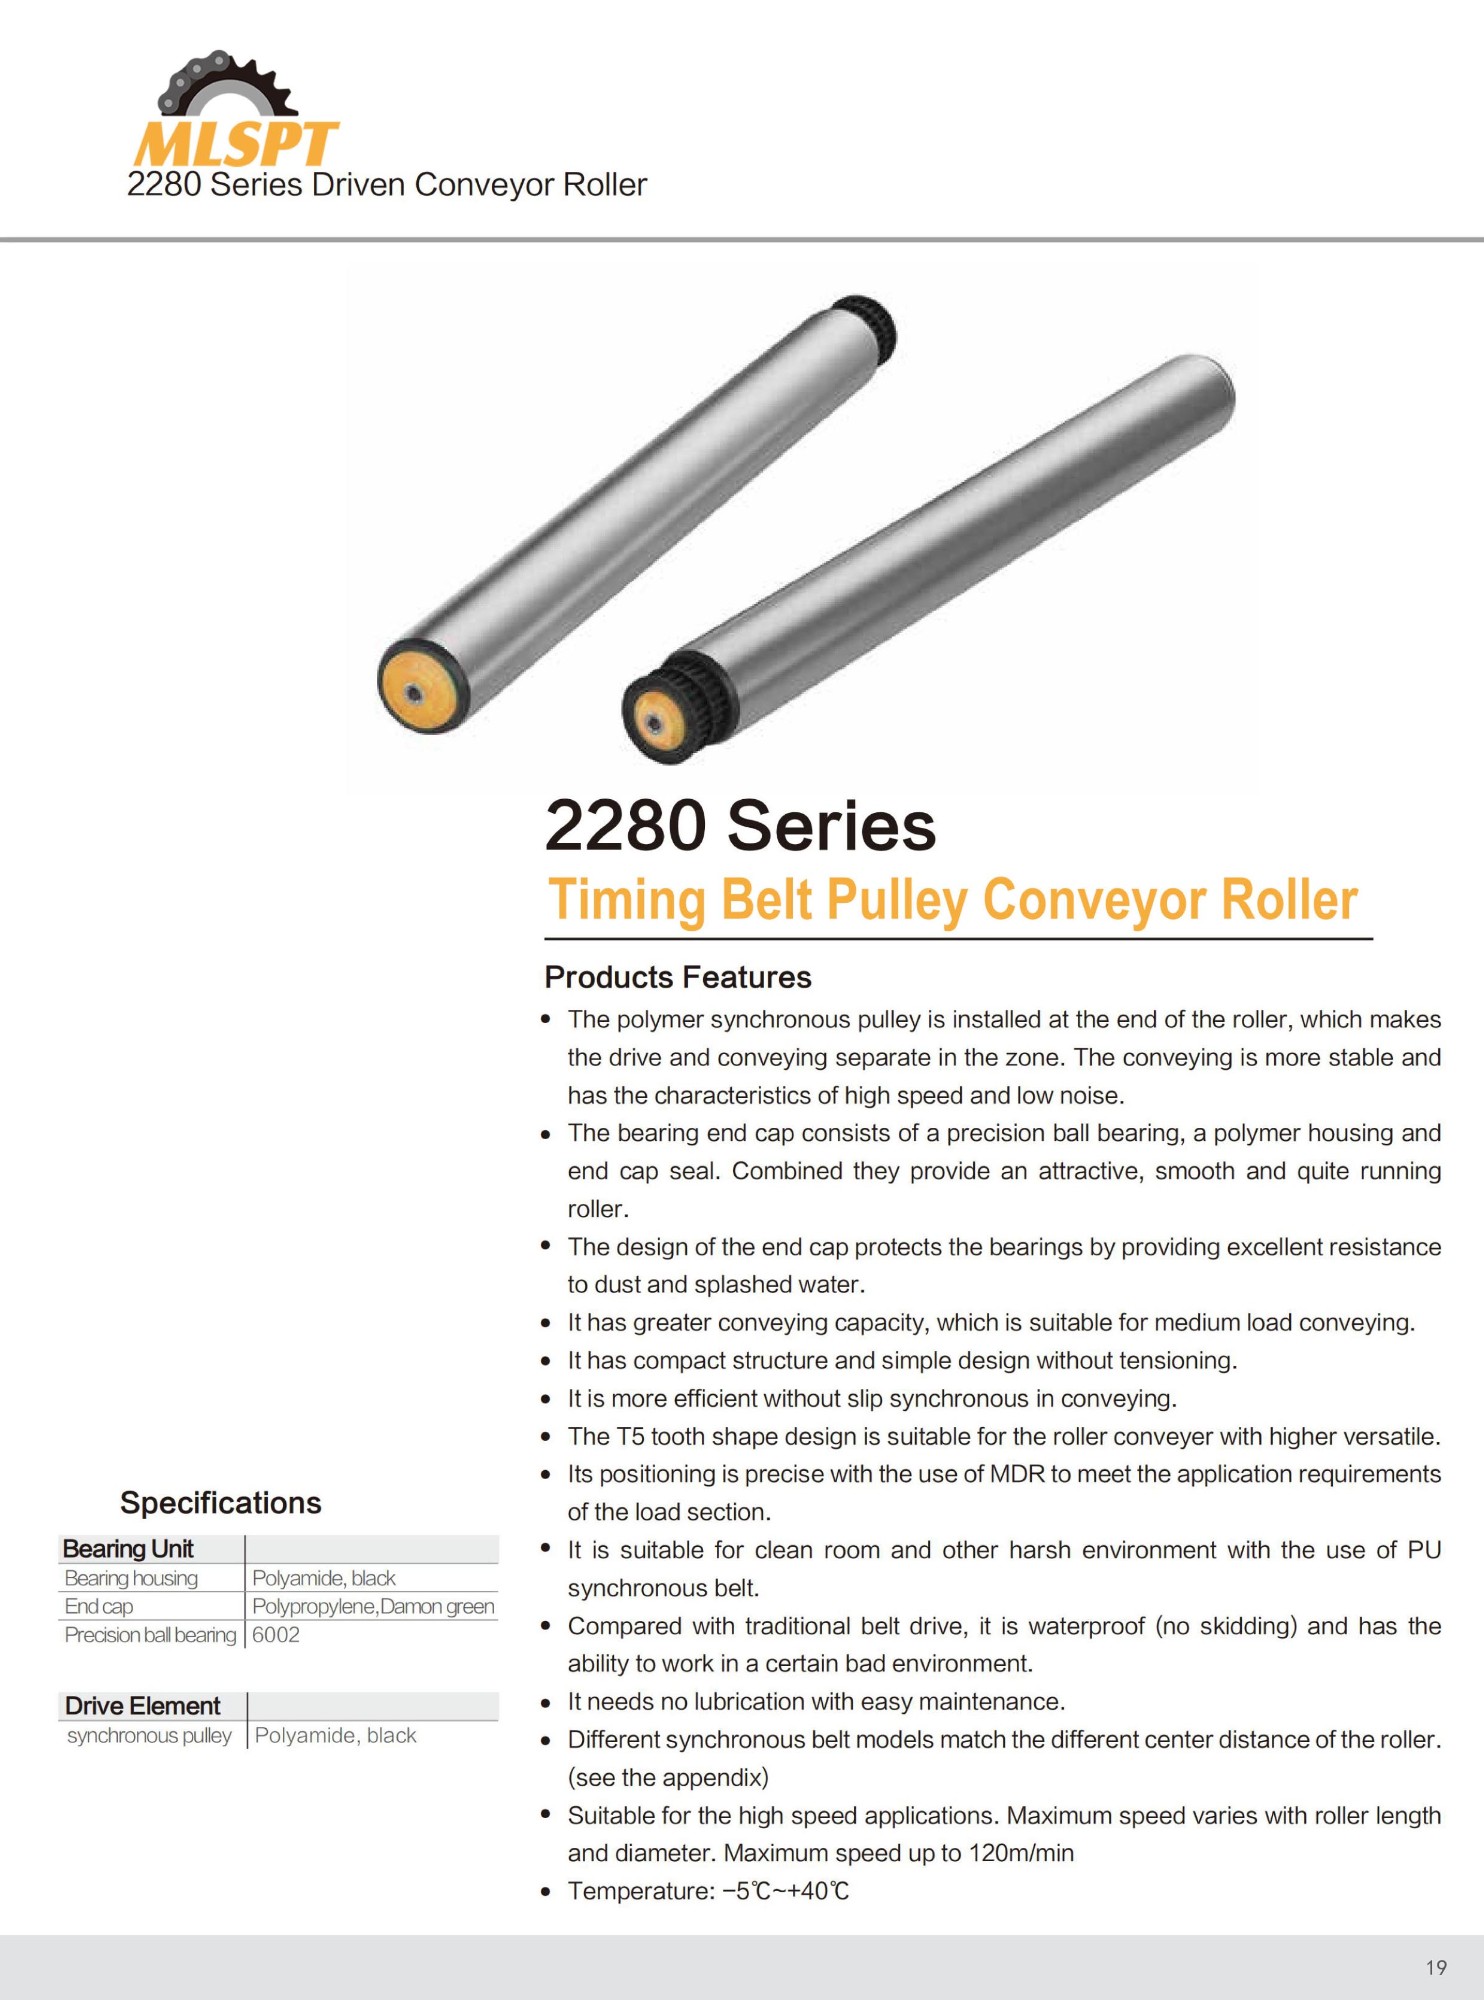 2280 Series Timing Belt Pulley Conveyor Roller 